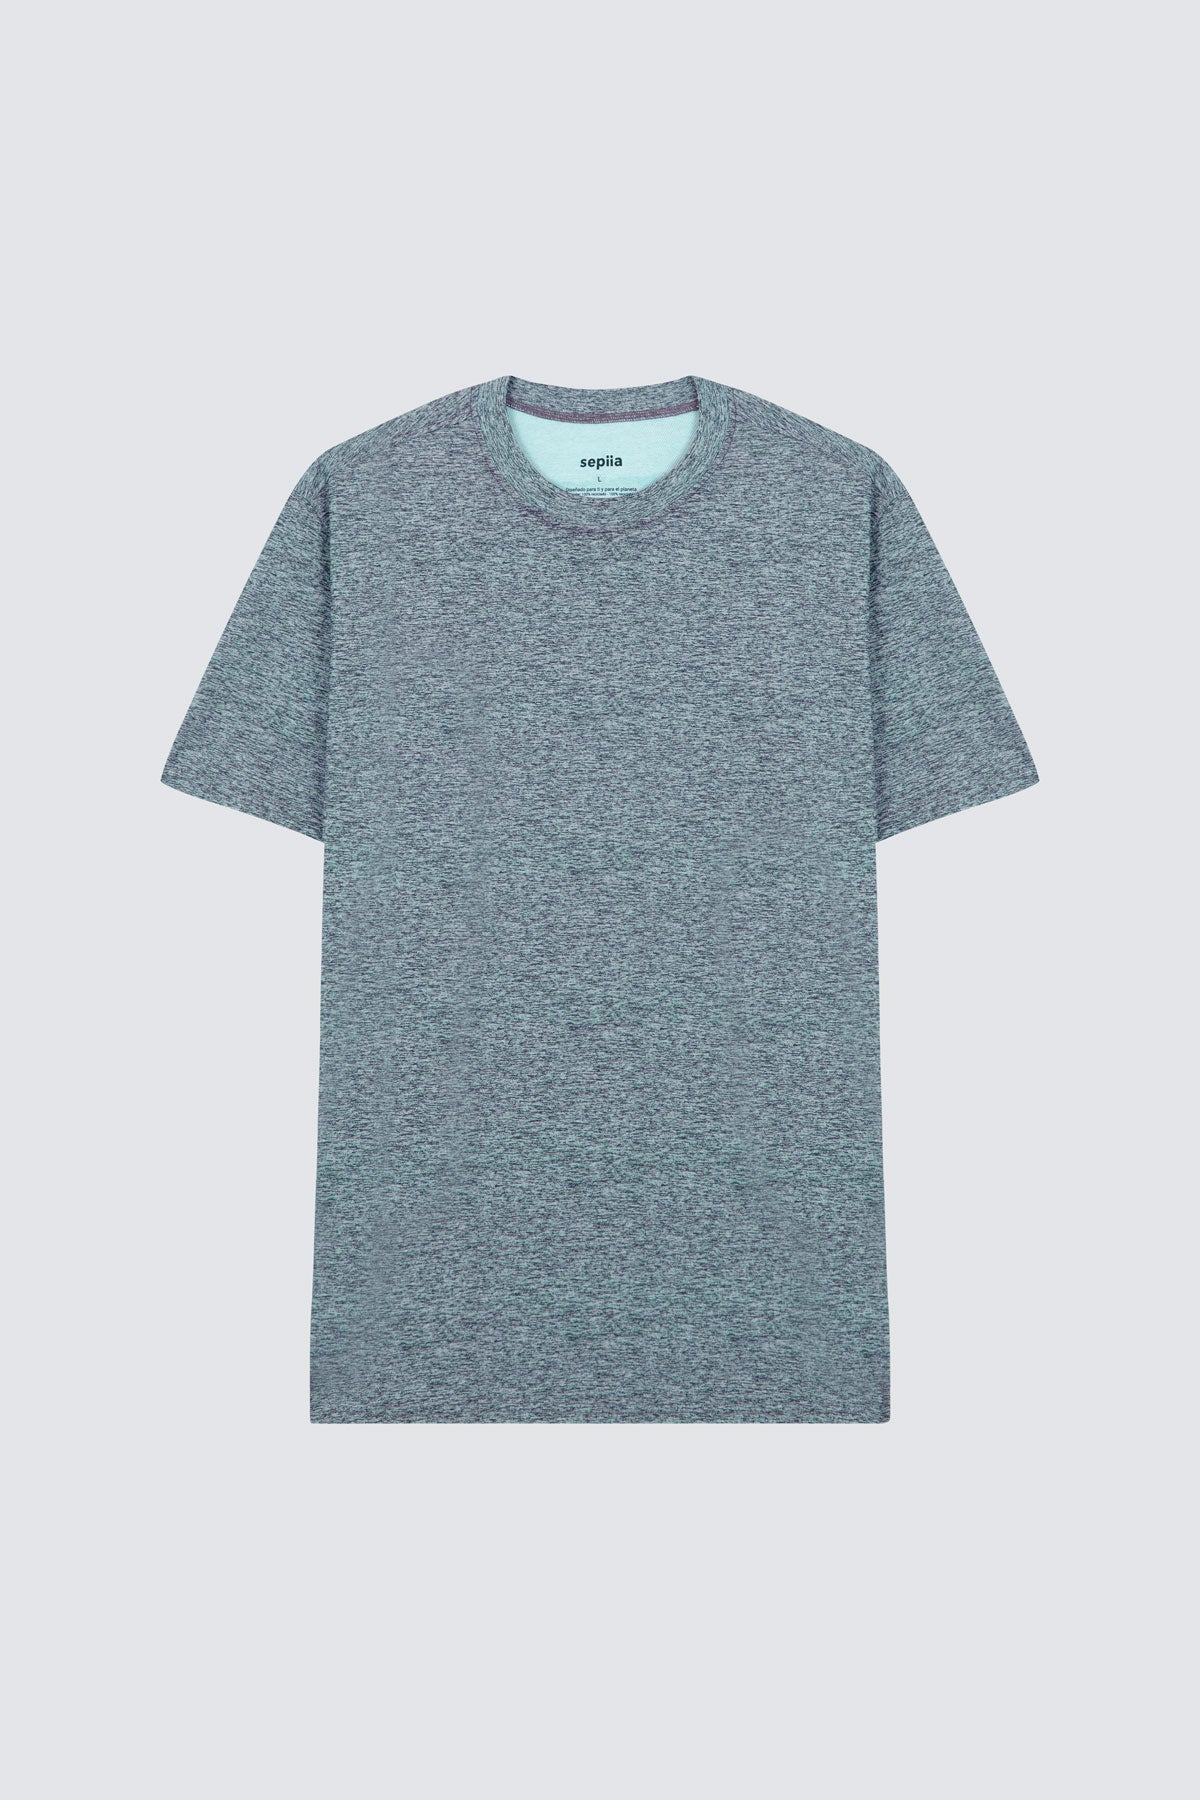 Camiseta de hombre en gris melange. de Sepiia, fresca y estilosa. Foto prenda en plano